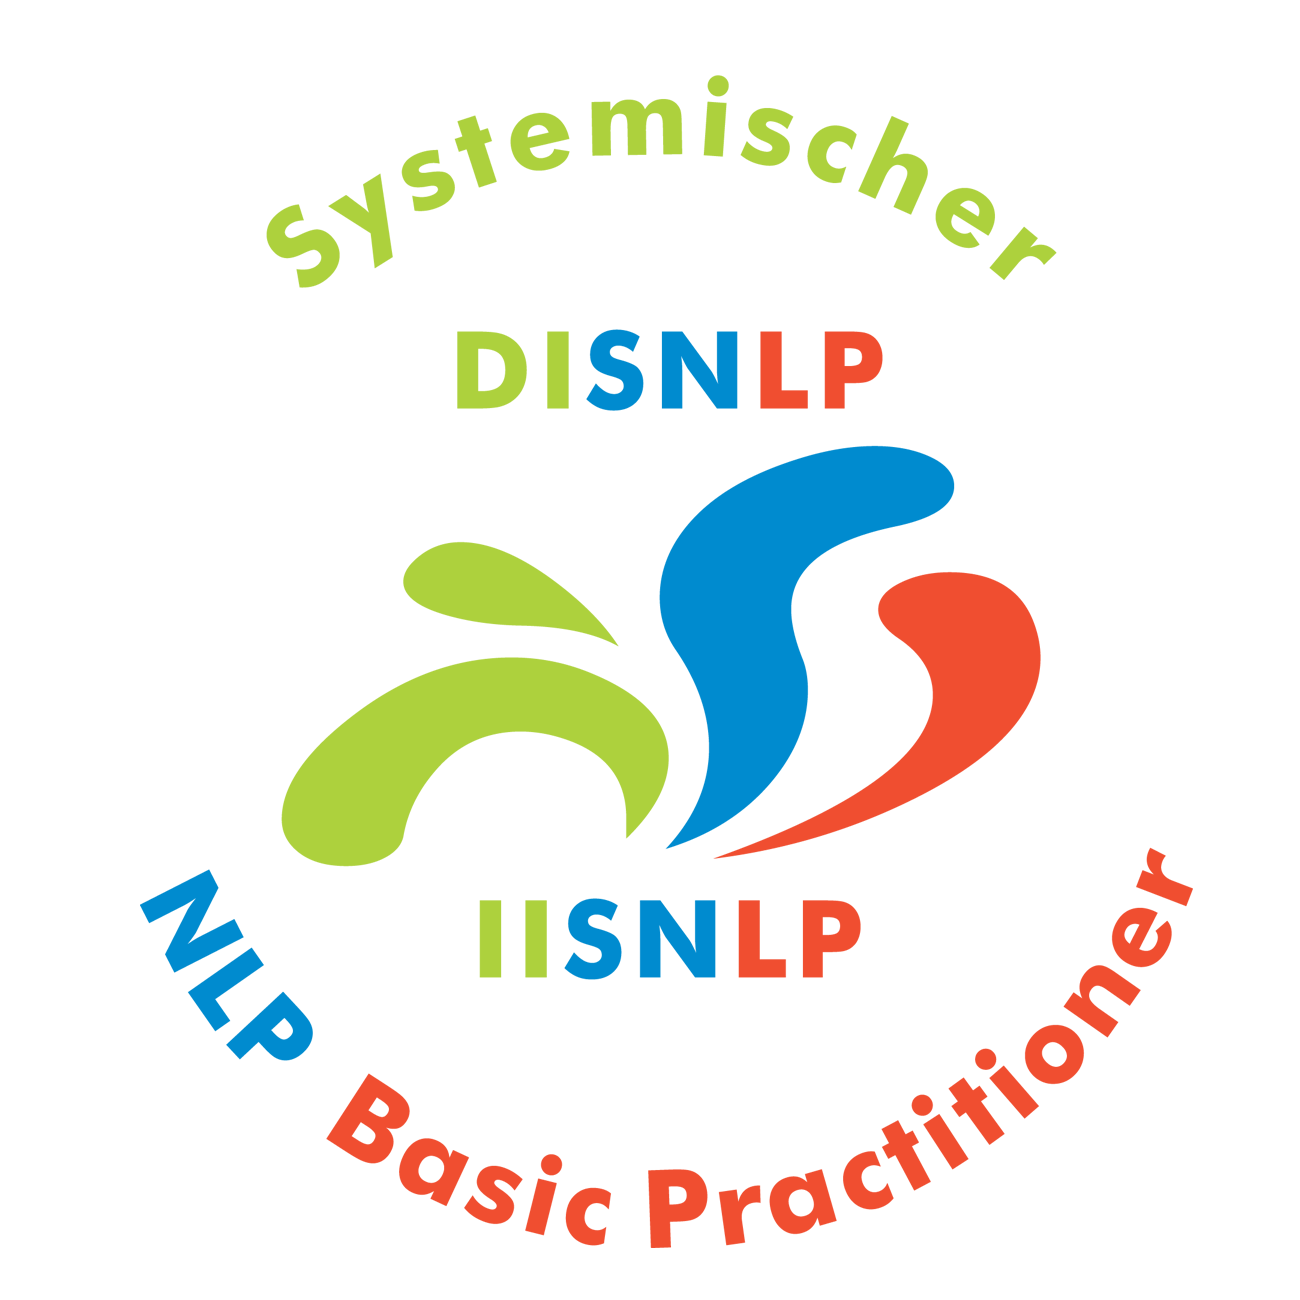 Seminar Selbstbewusstsein, Selbstvertrauen, Selbstwert, Selbstsicherheit stärken Landau Pfalz mit NLP Coaching Kurs für mehr Selbstbewusstsein